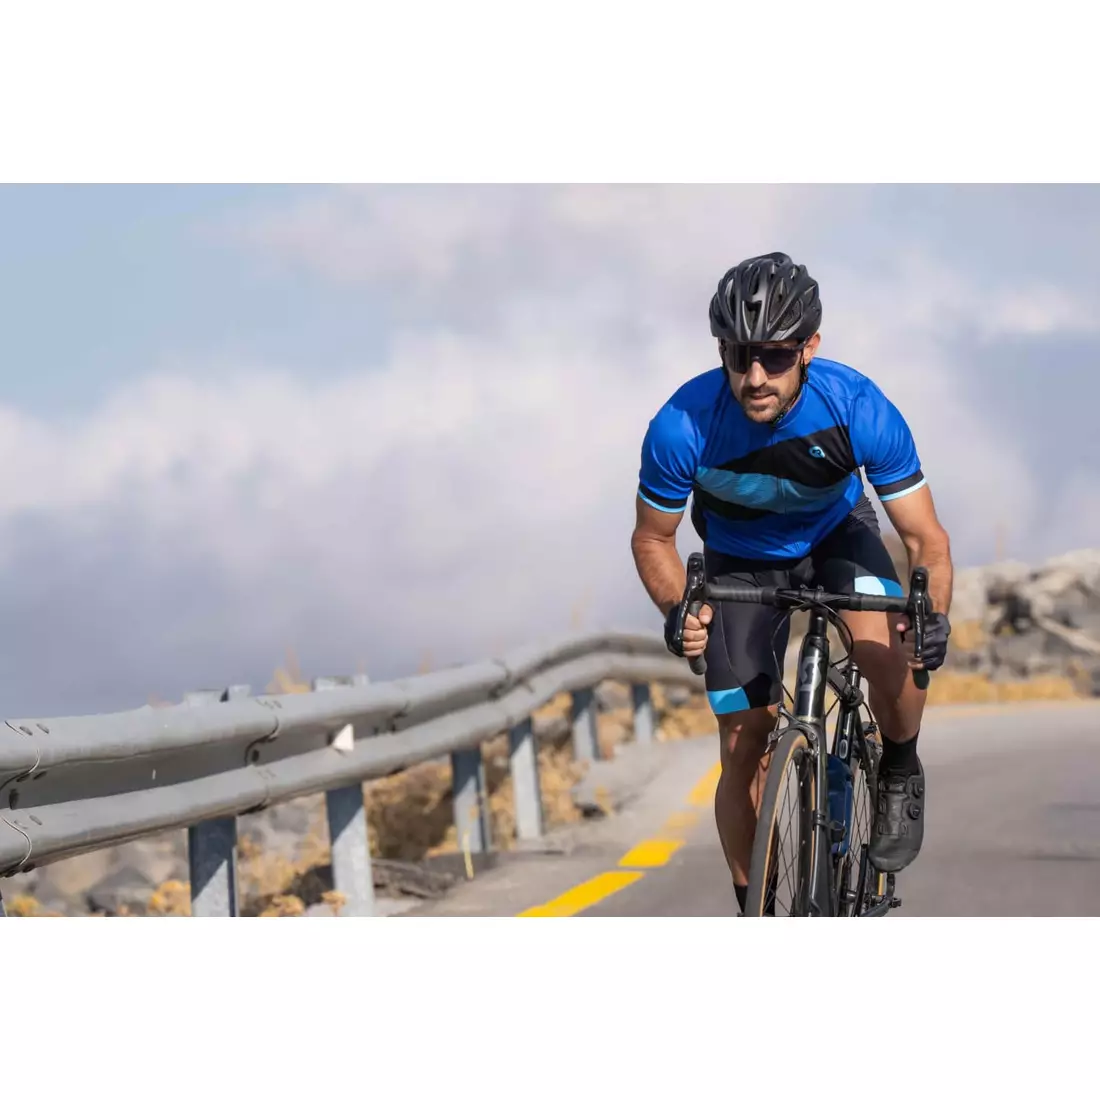 Rogelli GROOVE męska koszulka rowerowa, niebieska